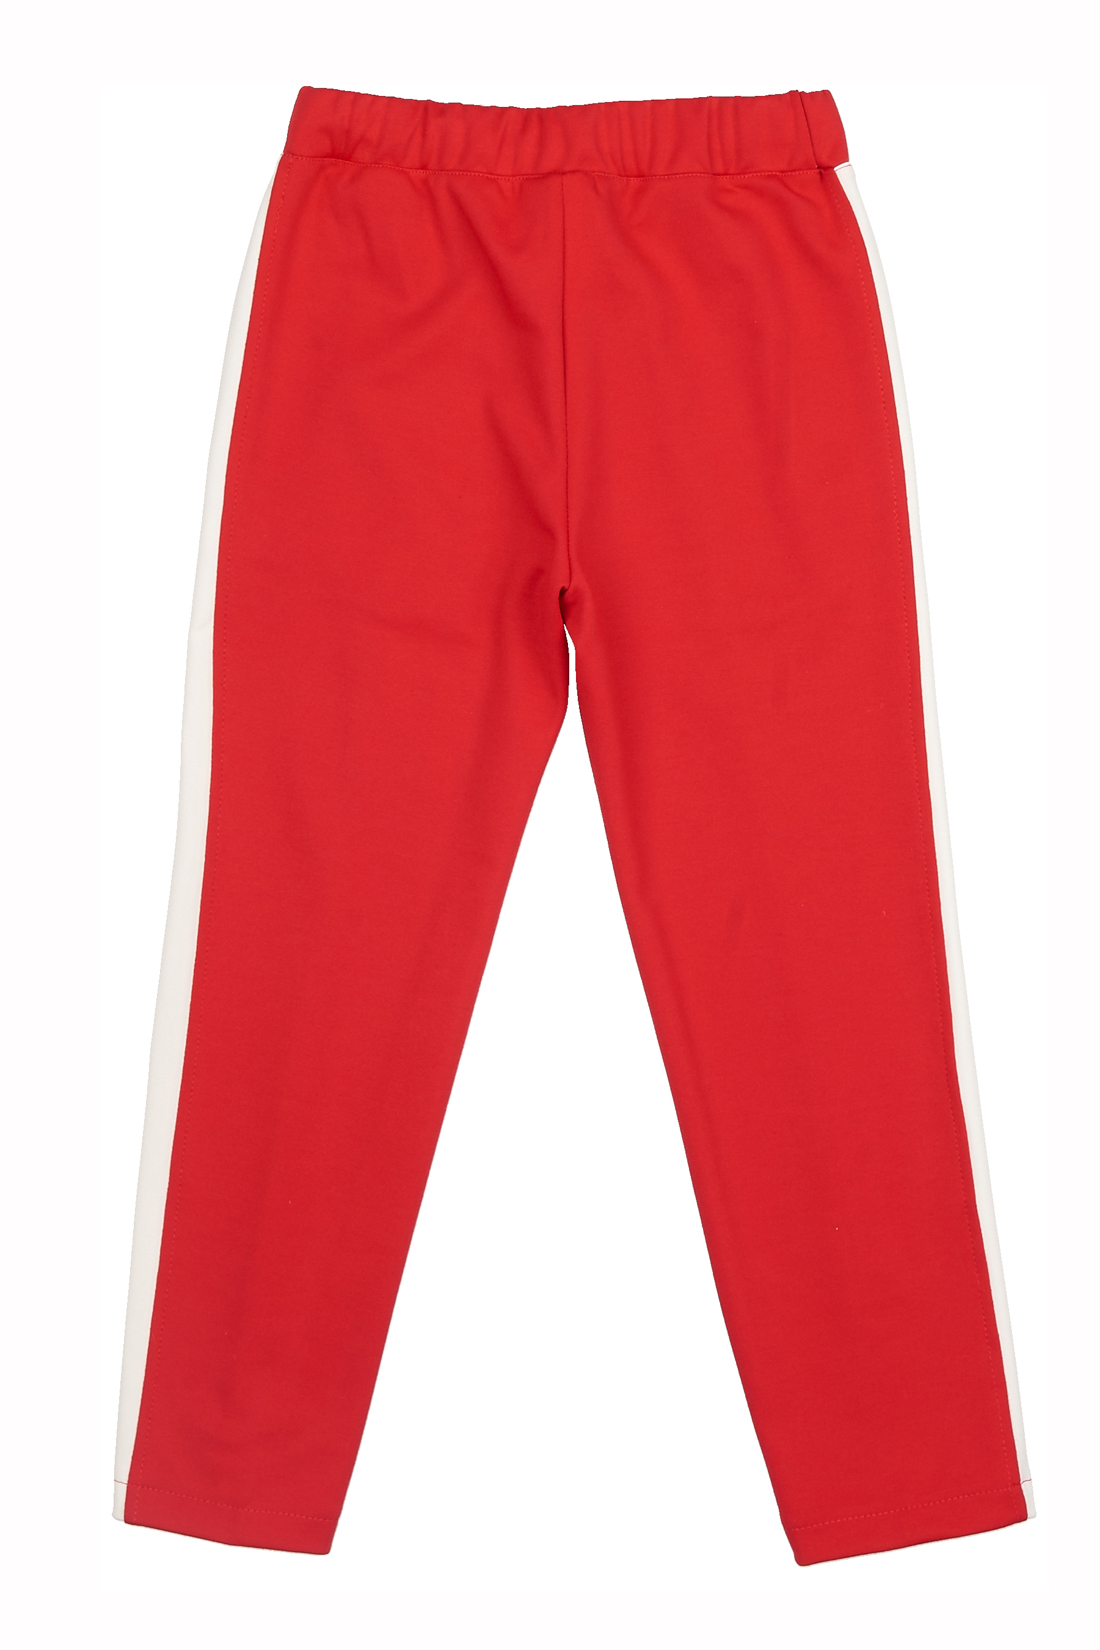 Трикотажные брюки для девочки (арт. baon BK298006), размер 110-116, цвет красный Трикотажные брюки для девочки (арт. baon BK298006) - фото 2